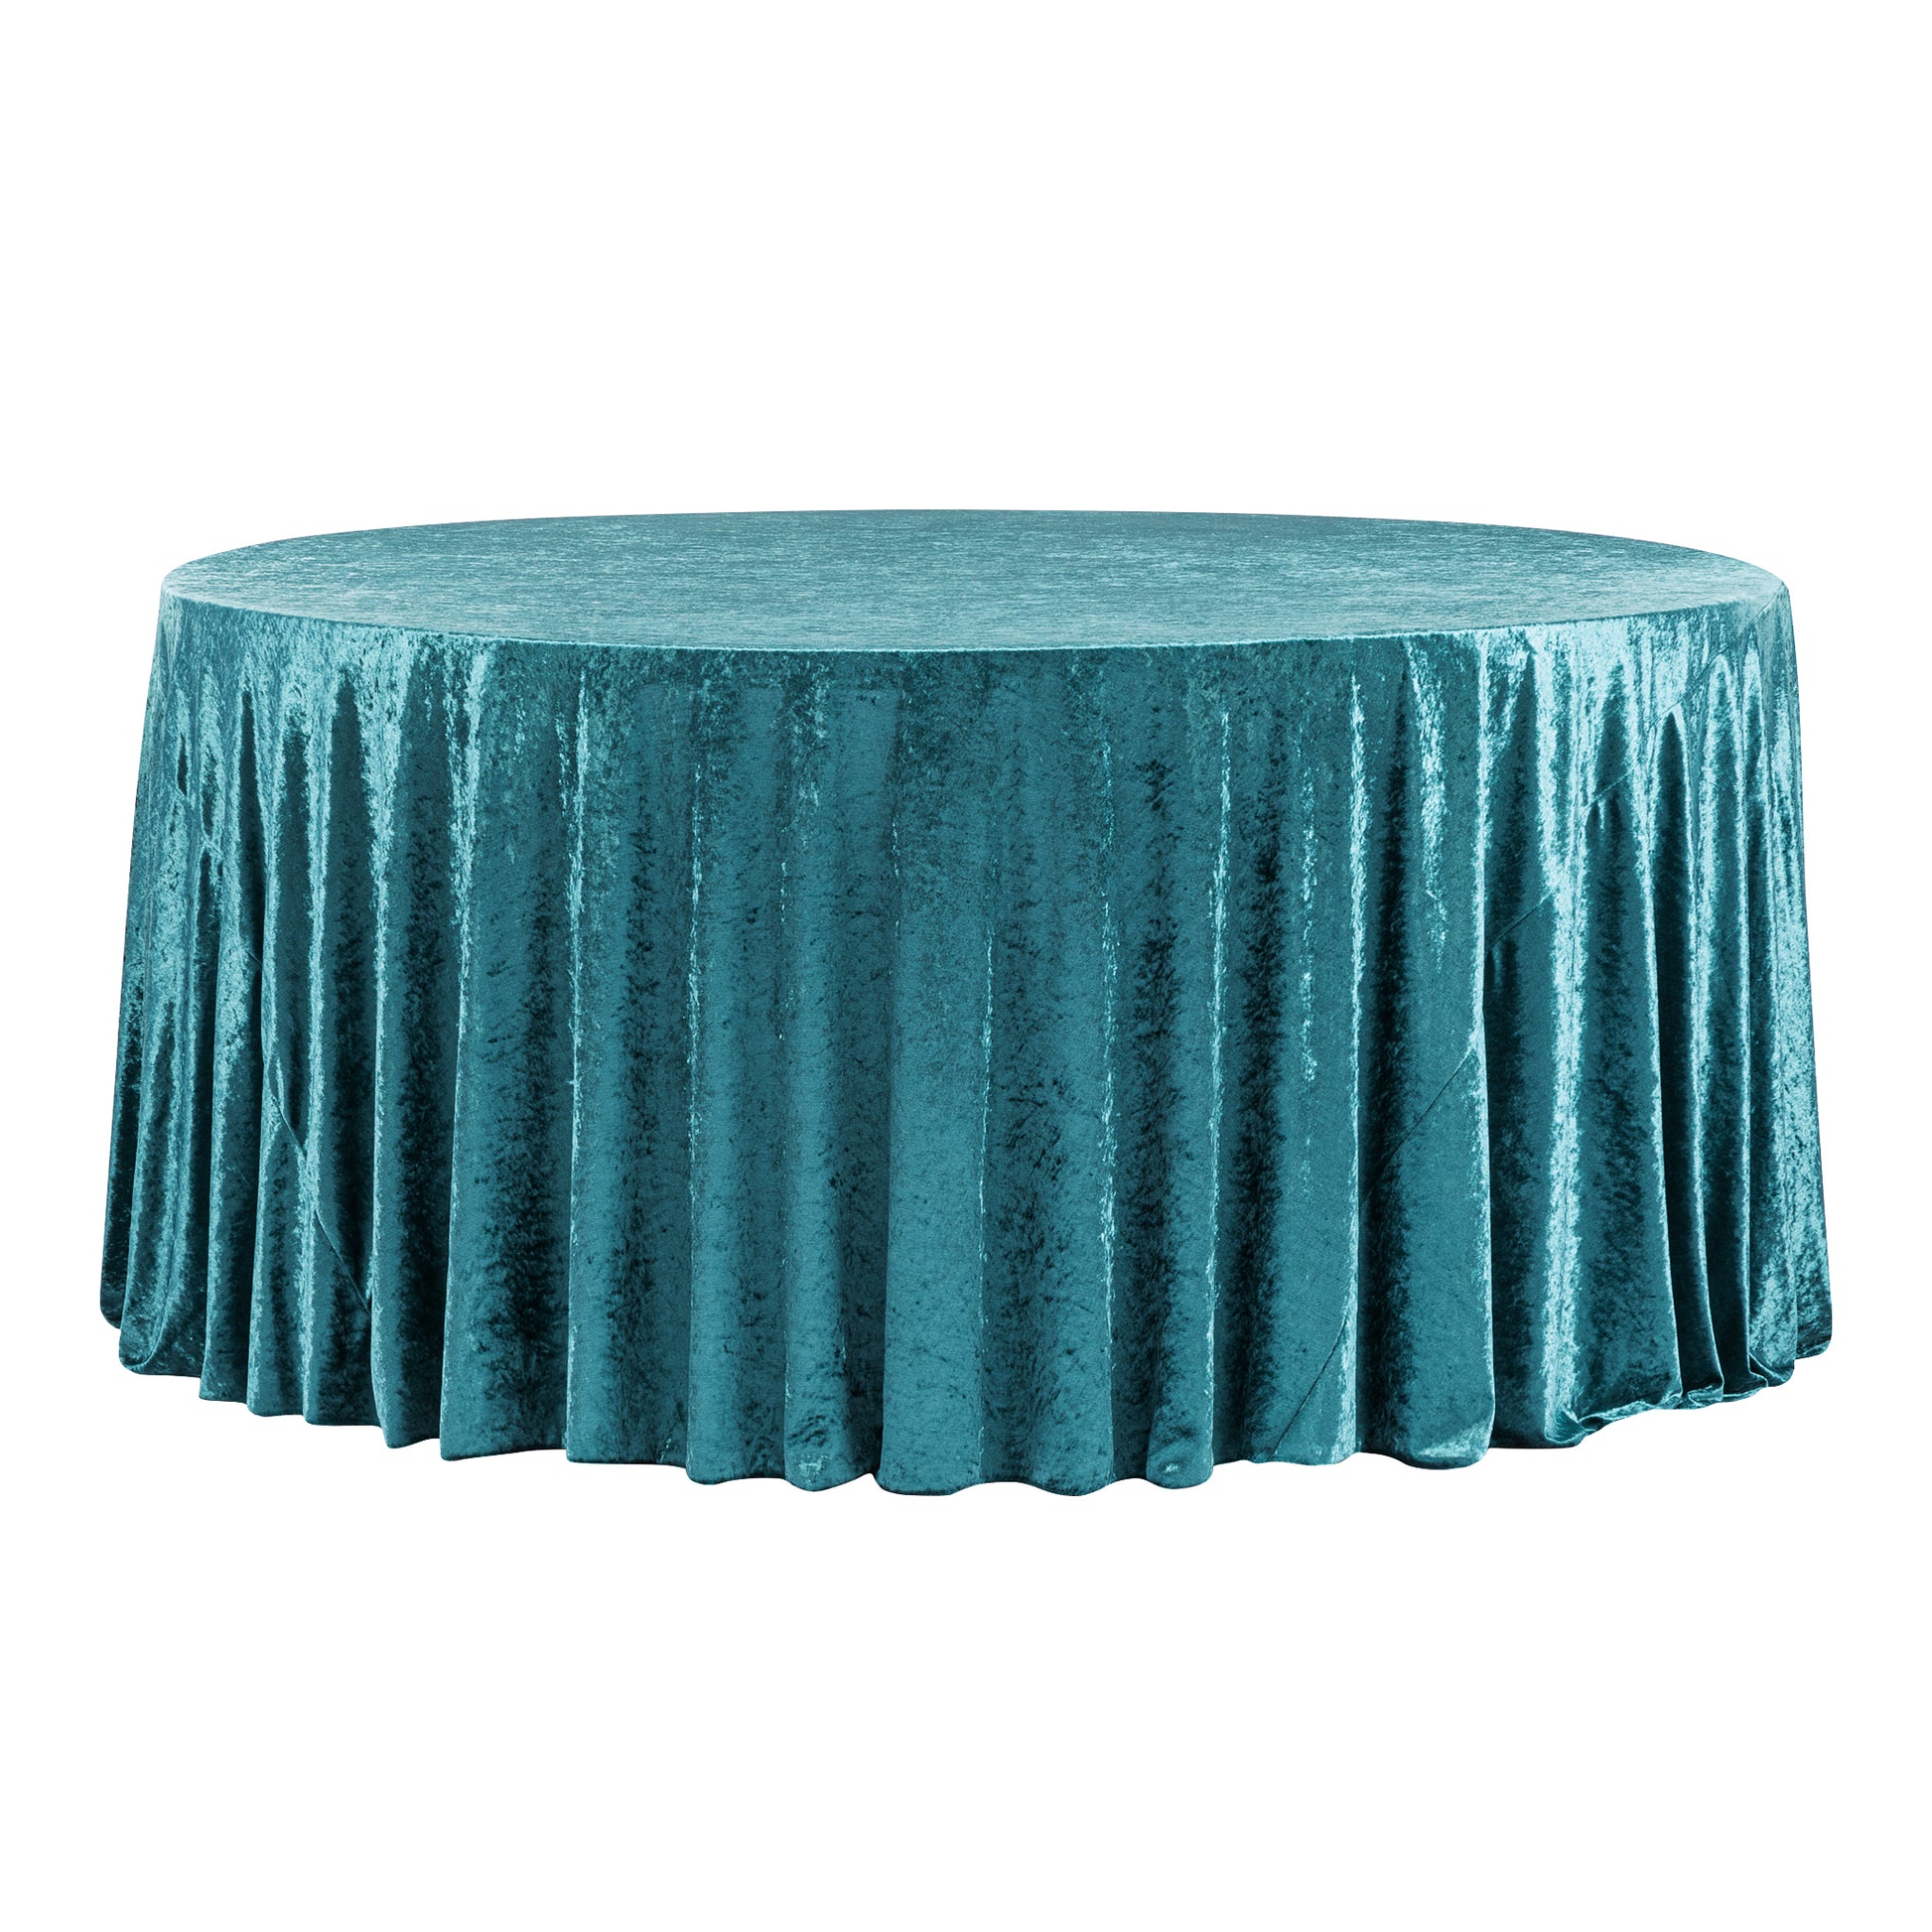 Velvet 120" Round Tablecloth - Dark Turquoise - CV Linens